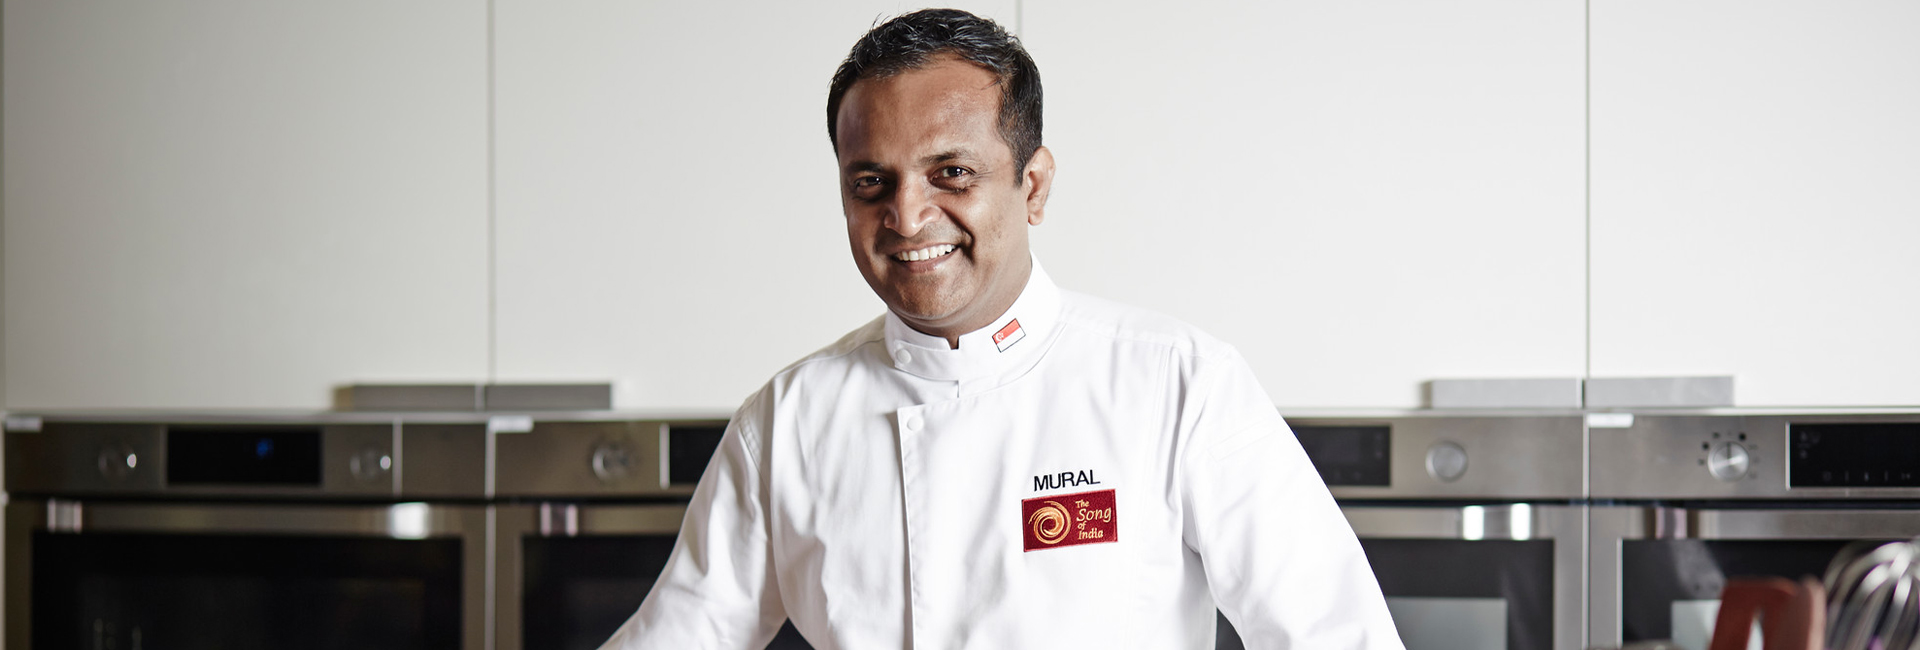 Mural de Manjunath: chef con estrella Michelin que sirve a la India en bandeja en Singapur